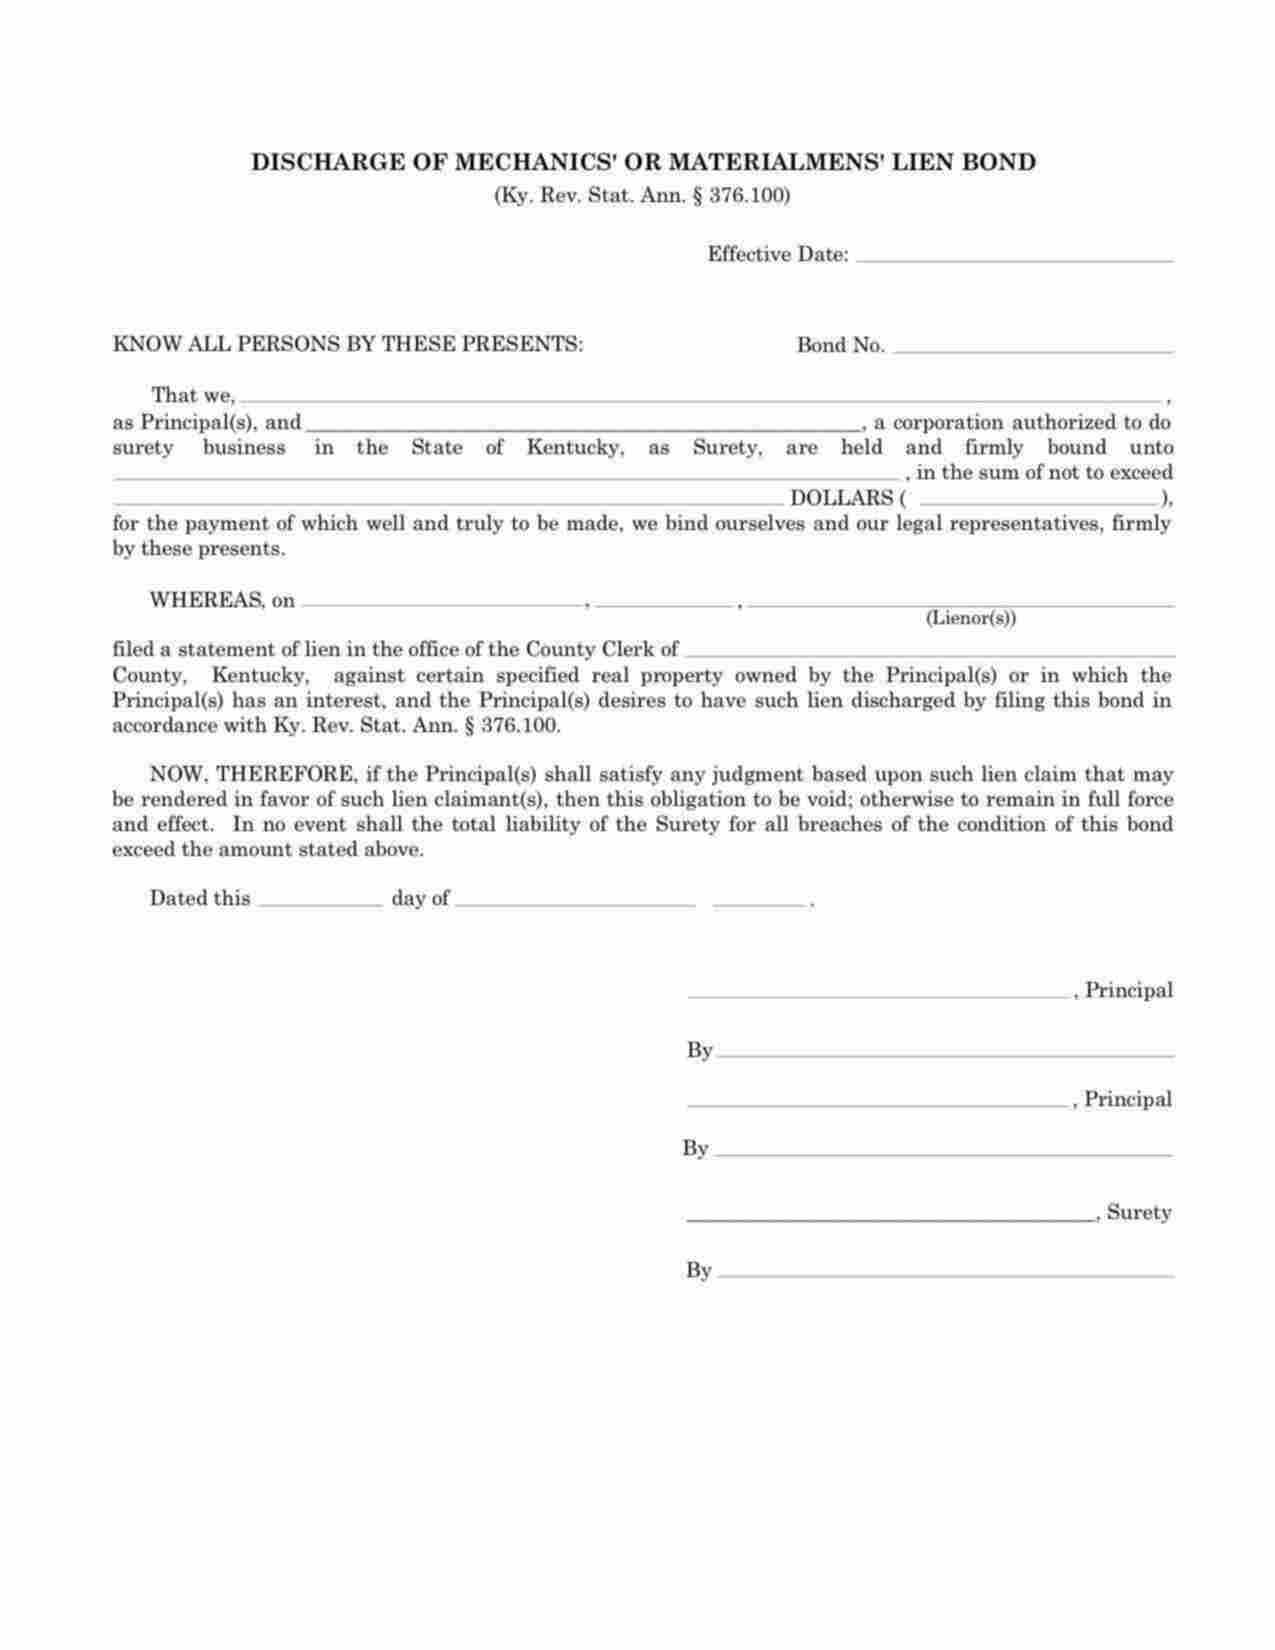 Kentucky Discharge of Mechanics Lien Bond Form